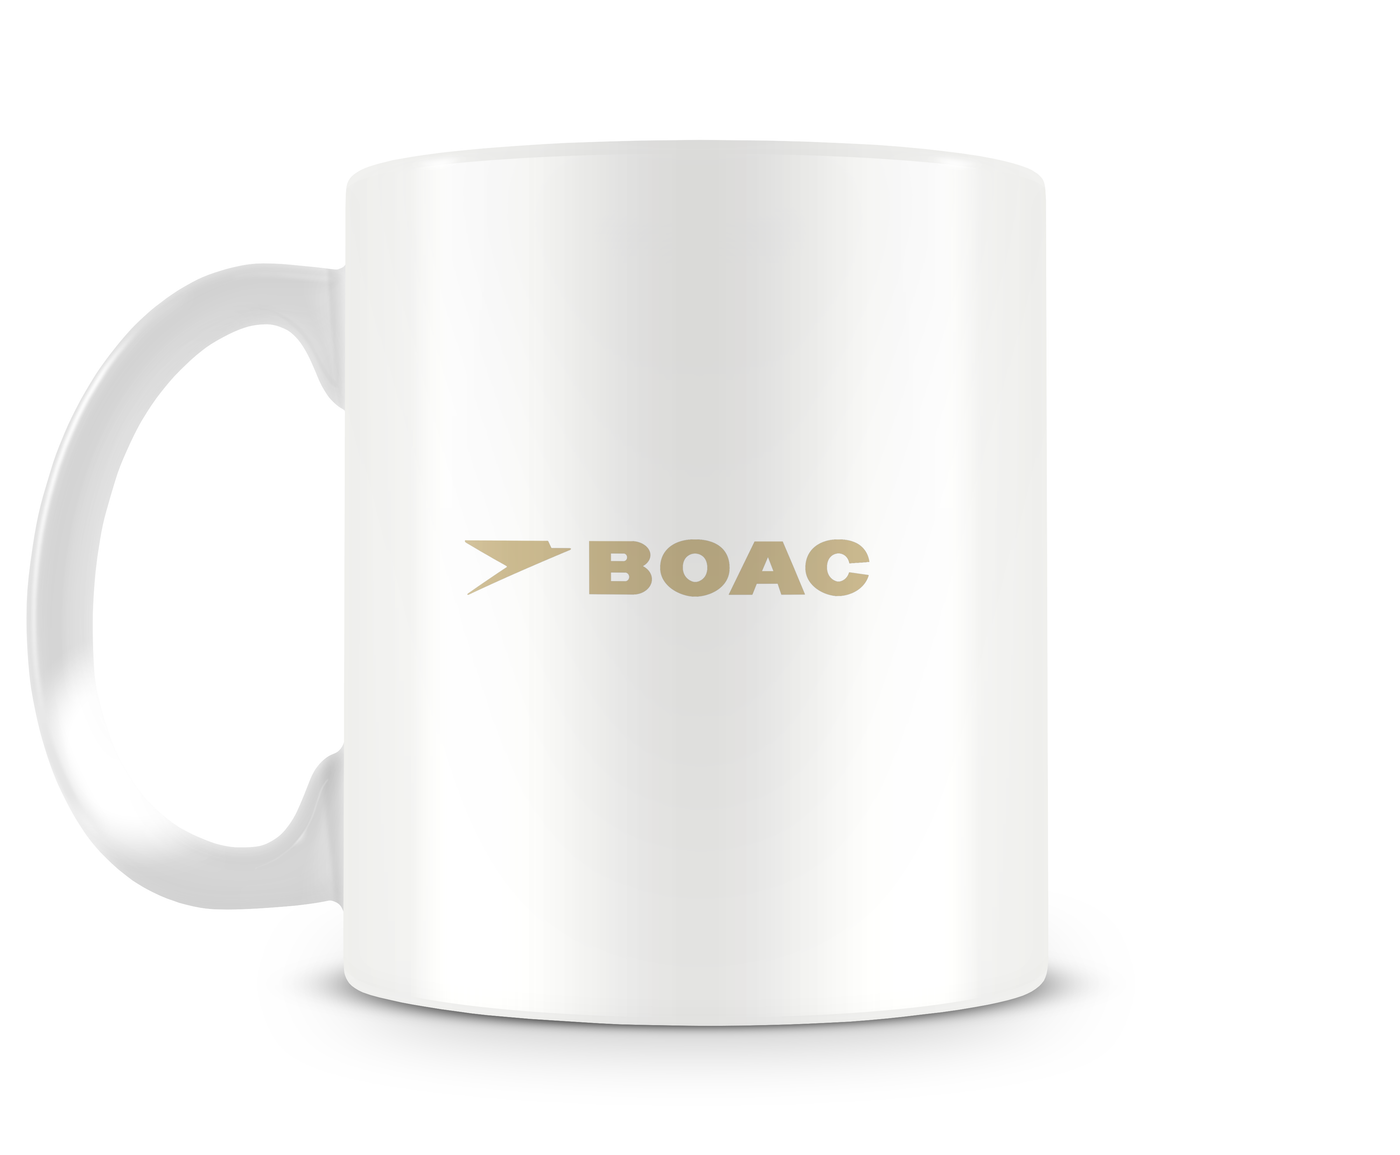 BOAC Vickers VC10 Mug - Aircraft Mugs